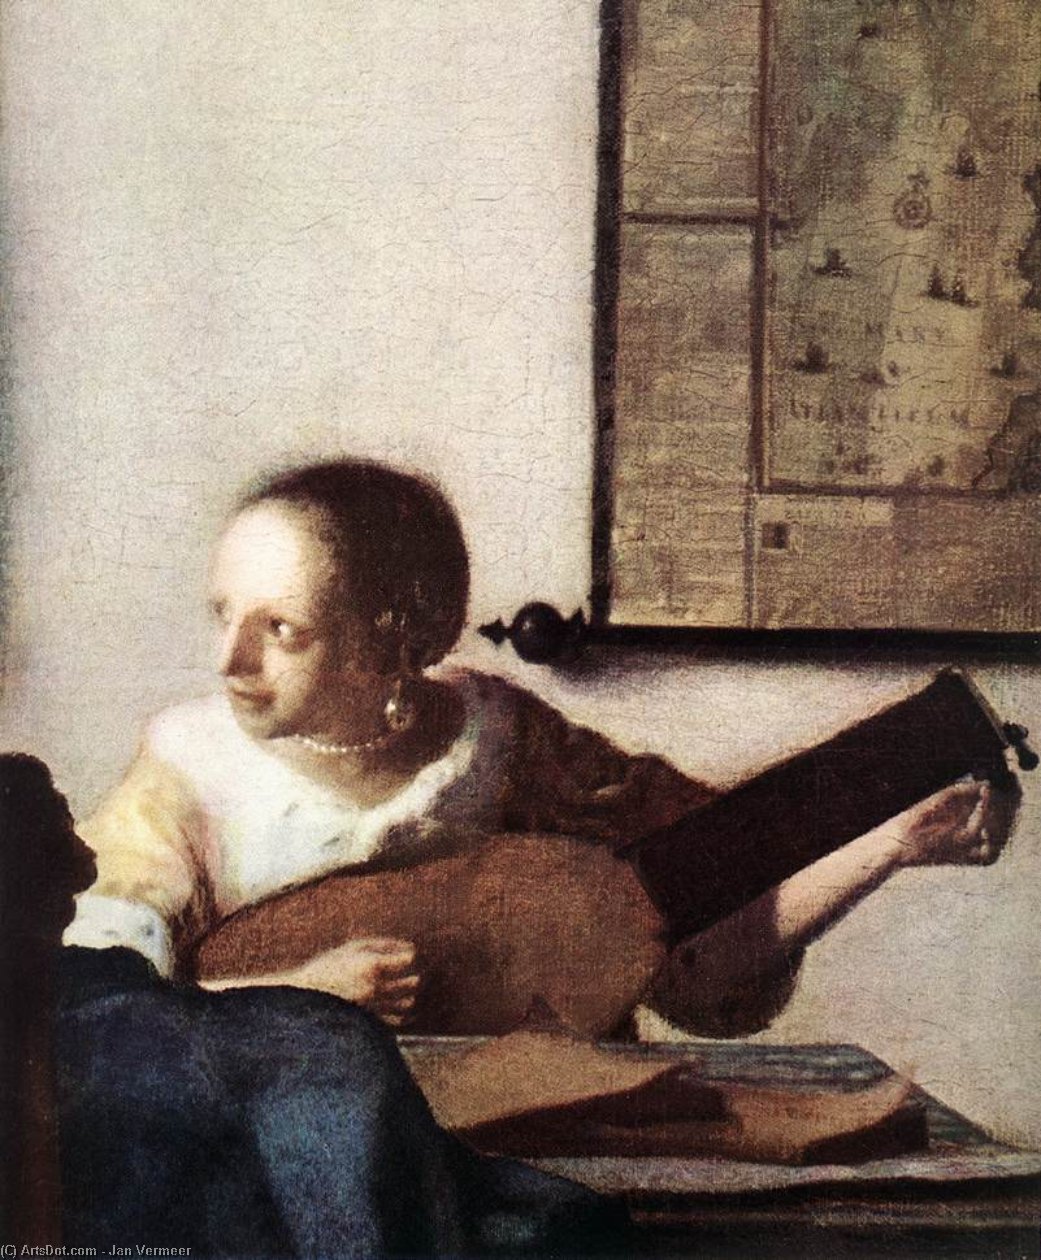 WikiOO.org - Энциклопедия изобразительного искусства - Живопись, Картины  Jan Vermeer - Женщина с лютней около     Окно  фрагмент